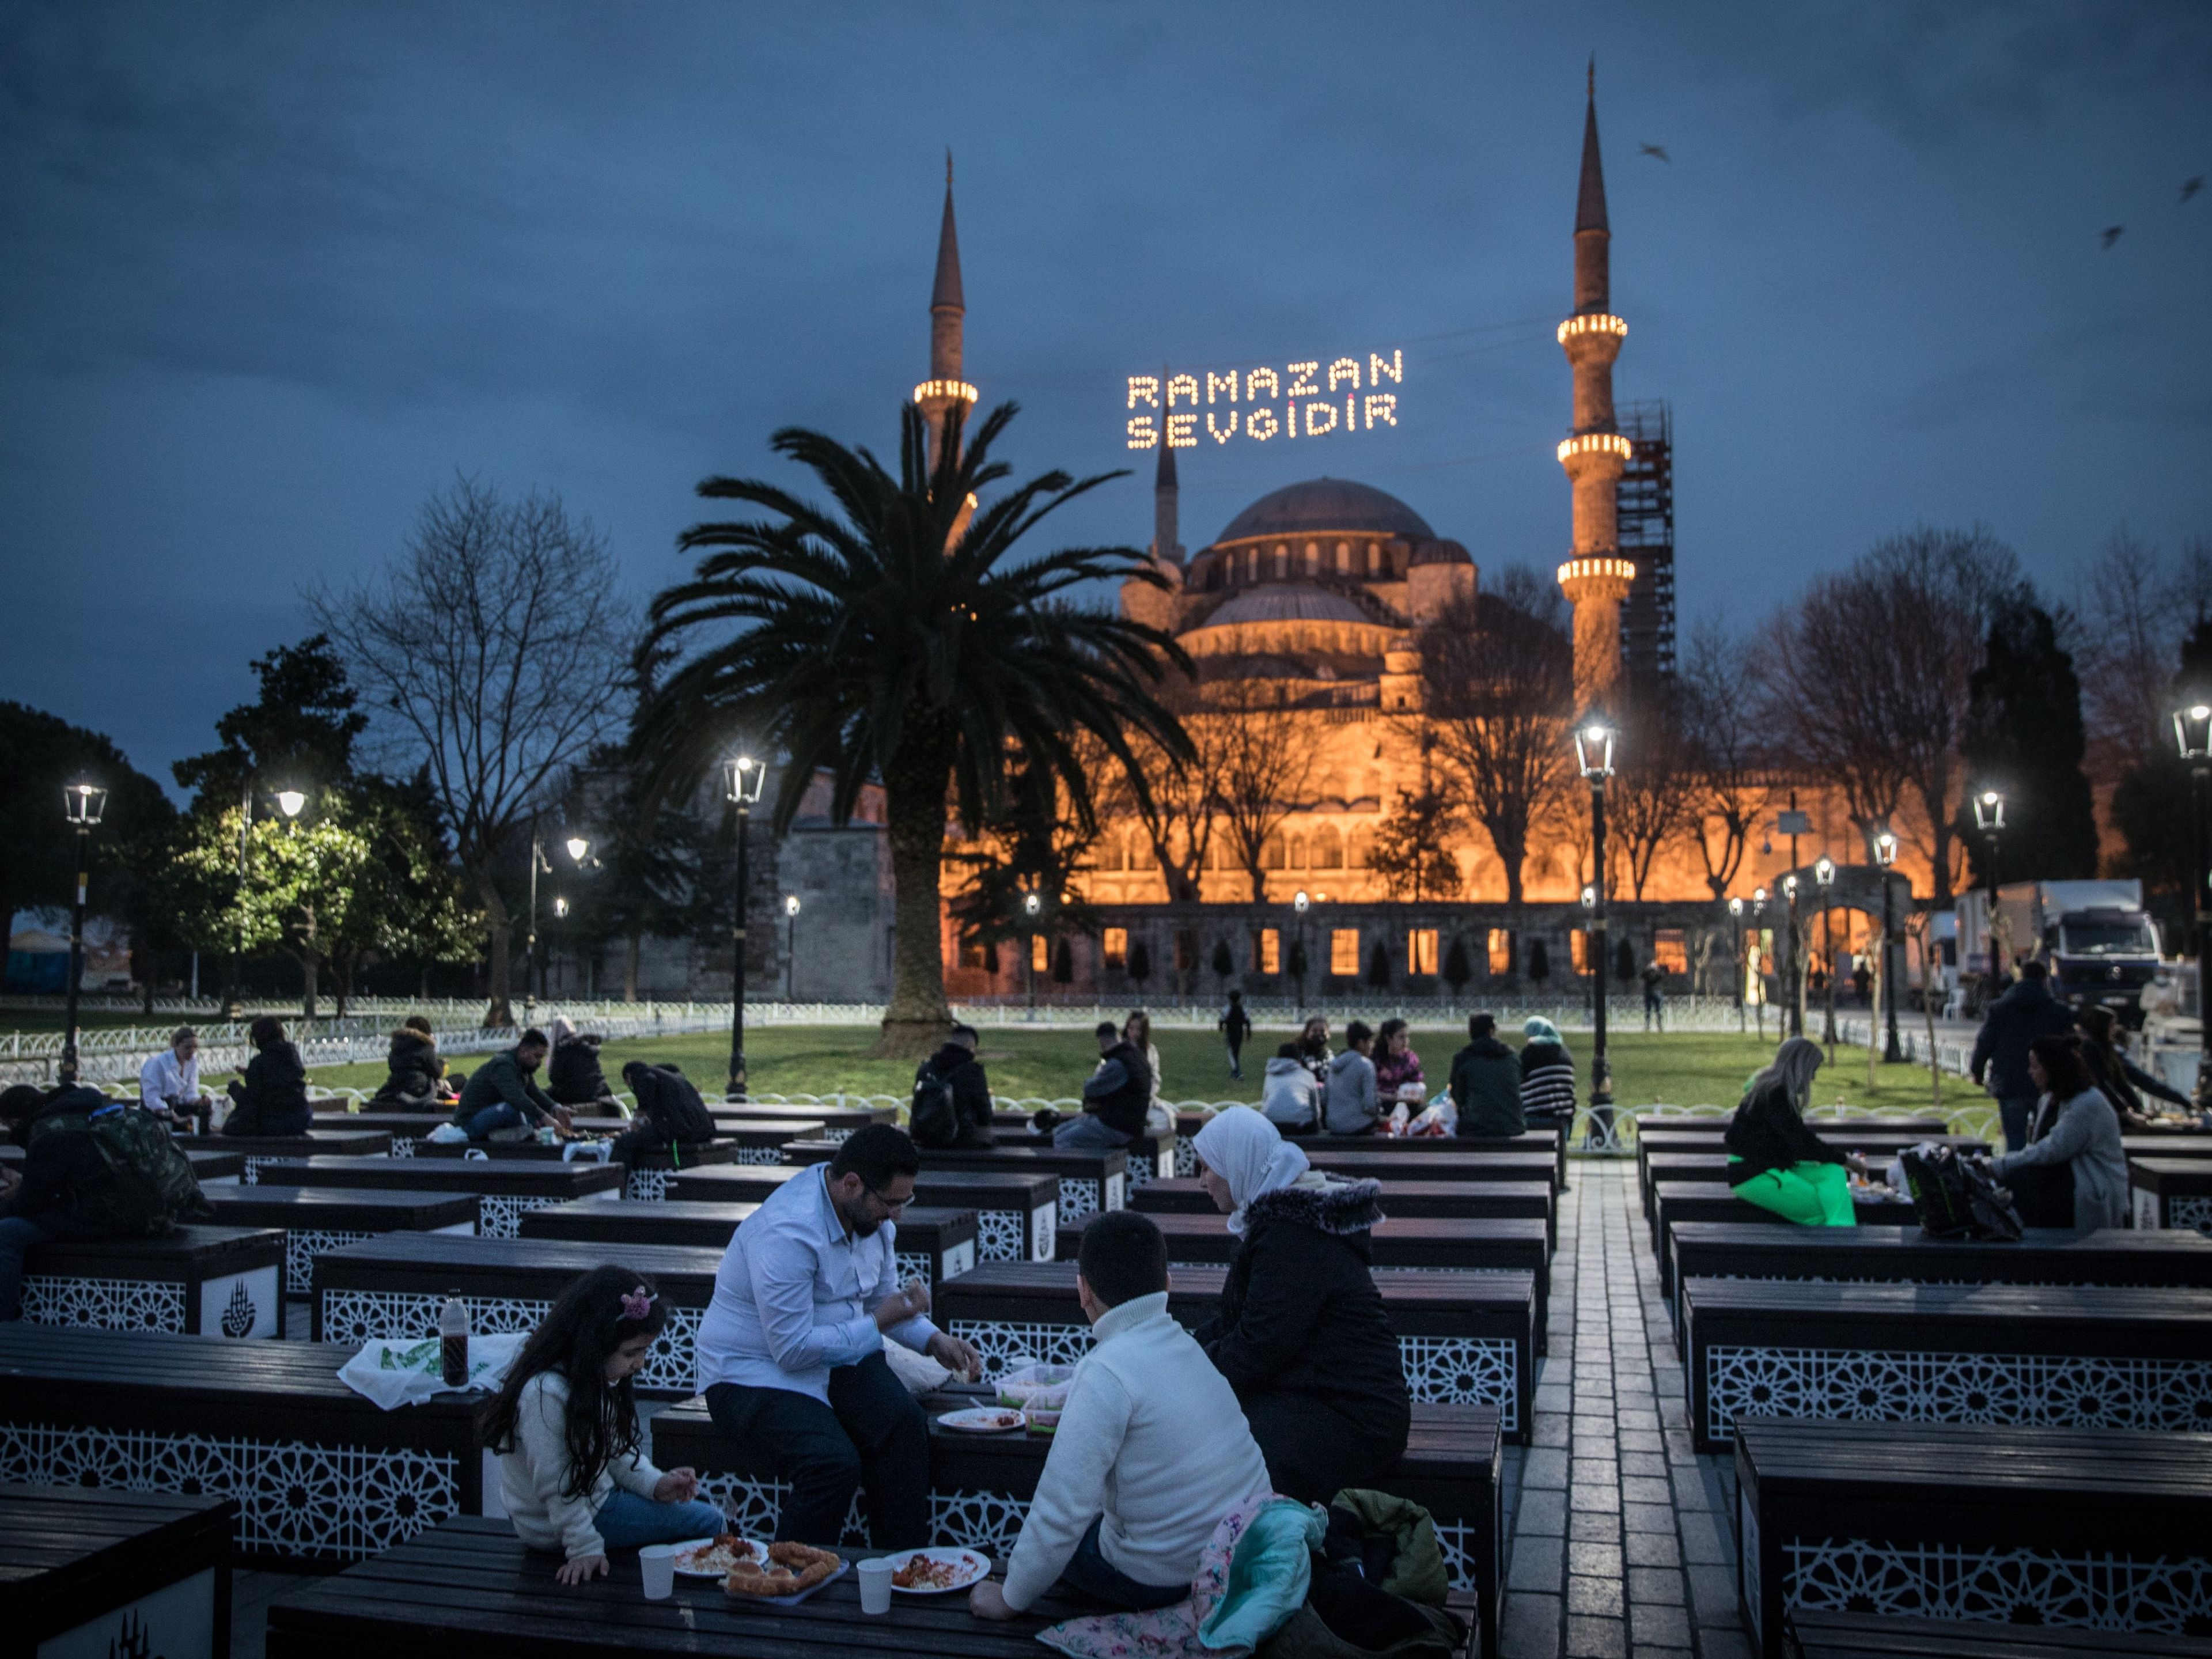 Calendrier du Ramadan : les horaires de jeûne dans votre ville